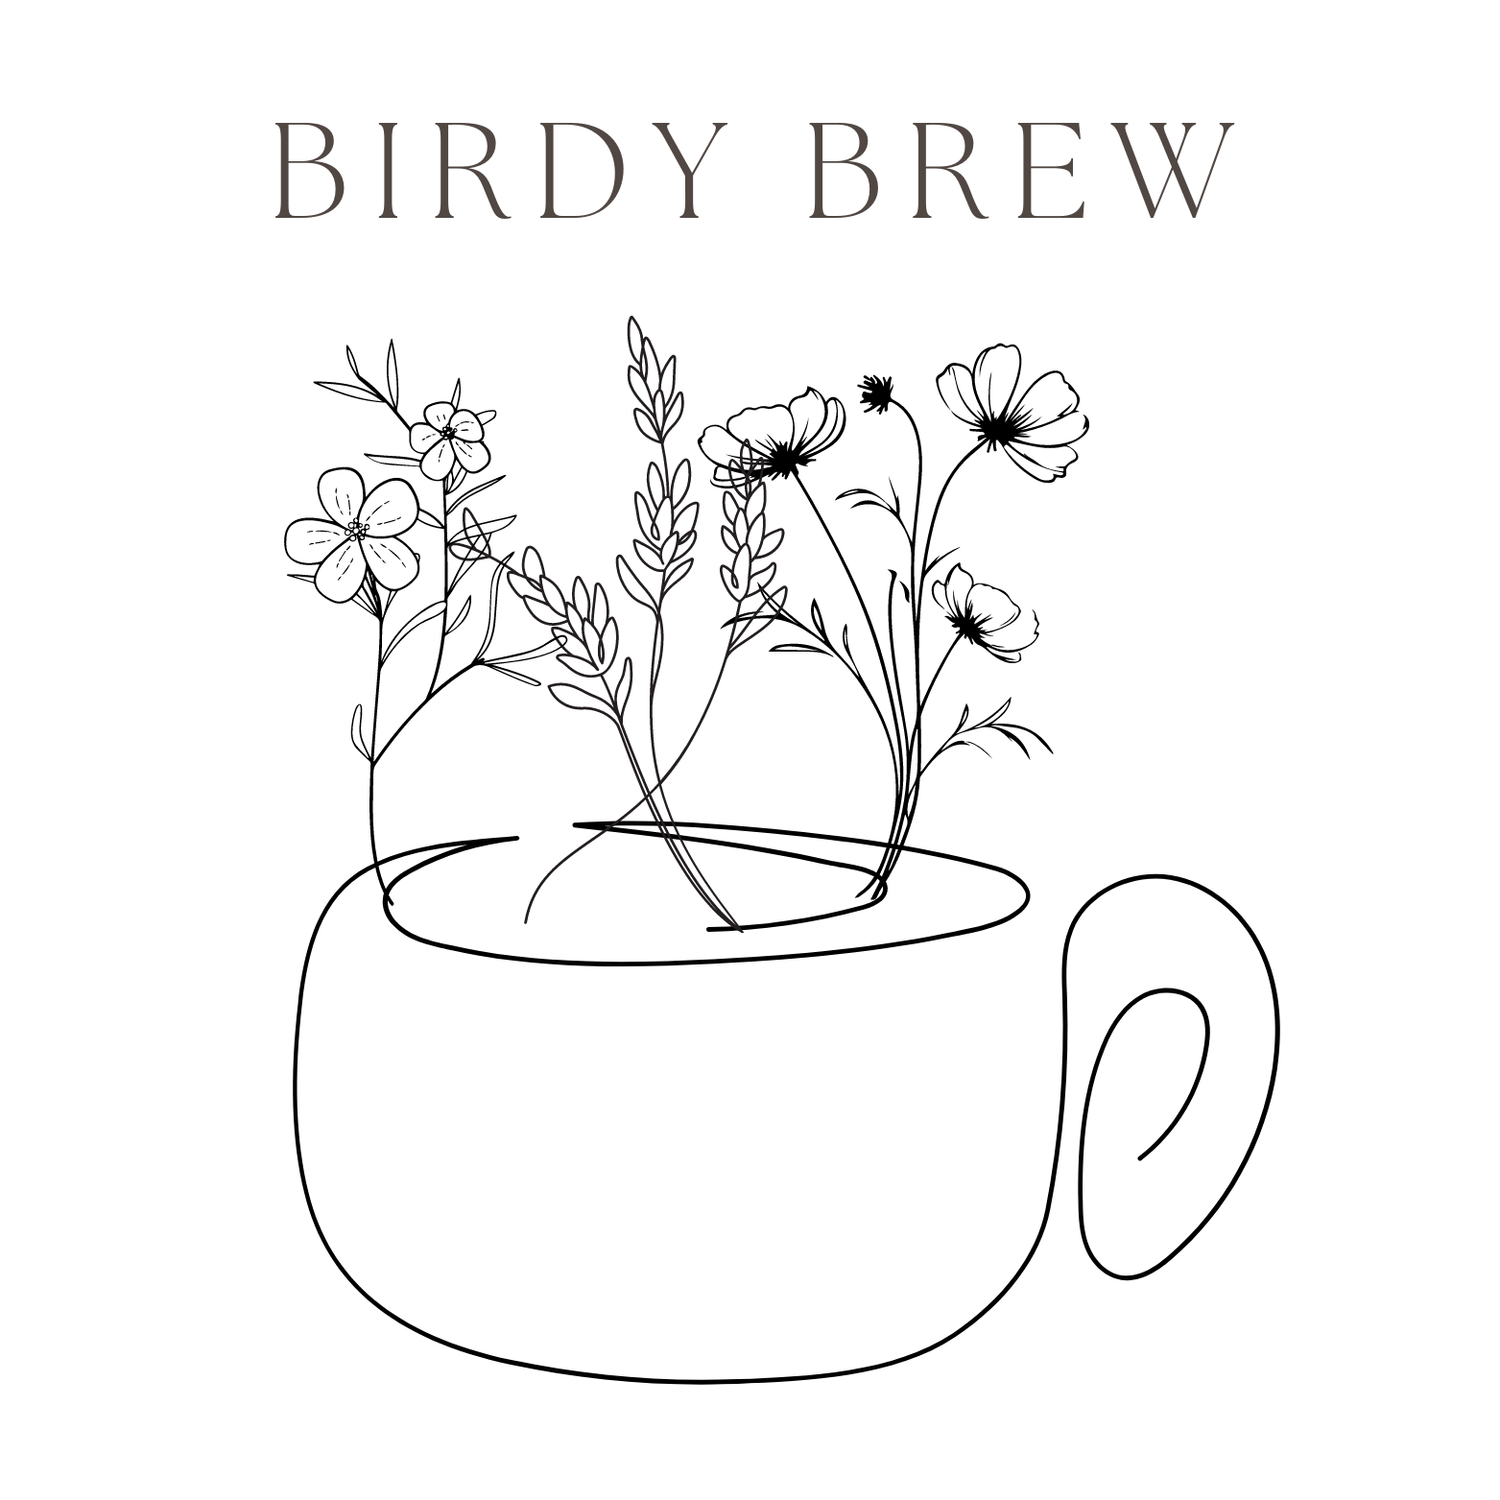 Birdy Brew